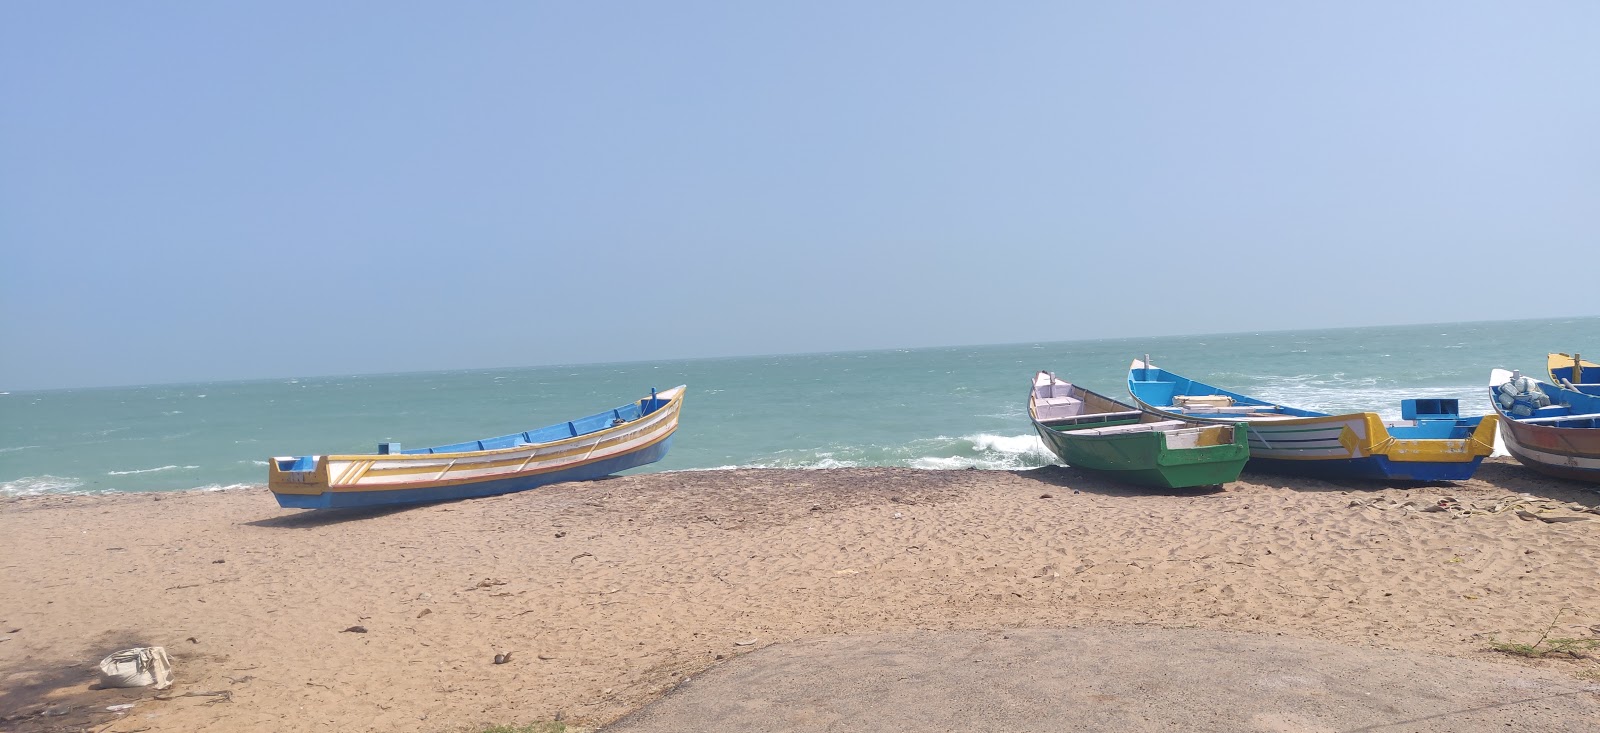 Thomaiyarpuram Beach'in fotoğrafı parlak kum yüzey ile